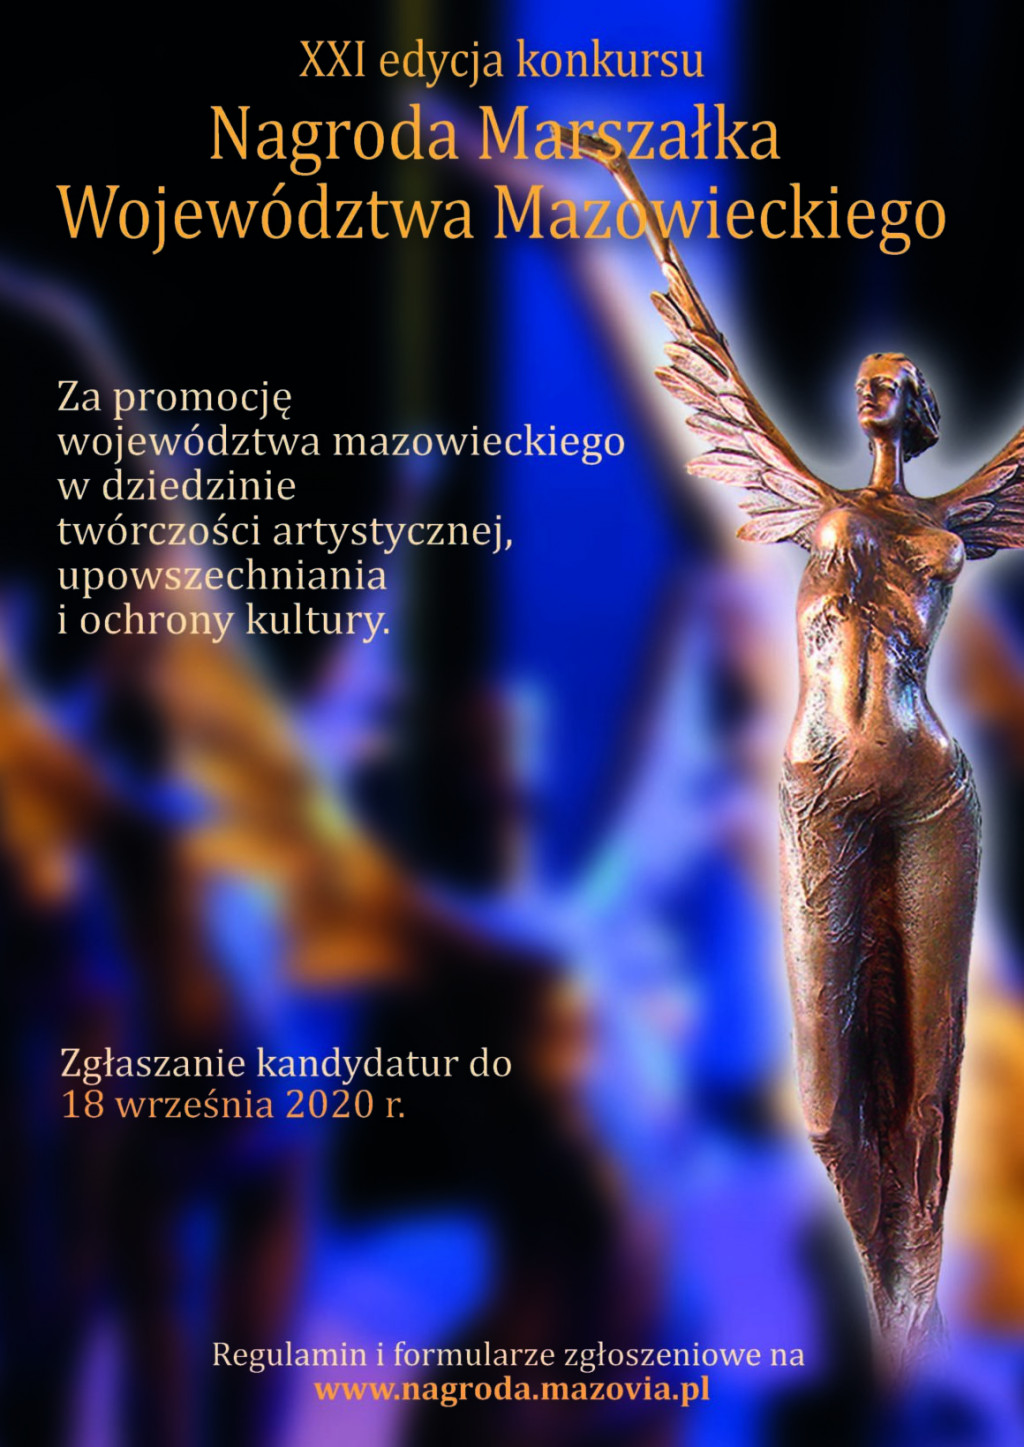 XXI edycja konkursu Nagroda Marszałka Województwa Mazowieckiego